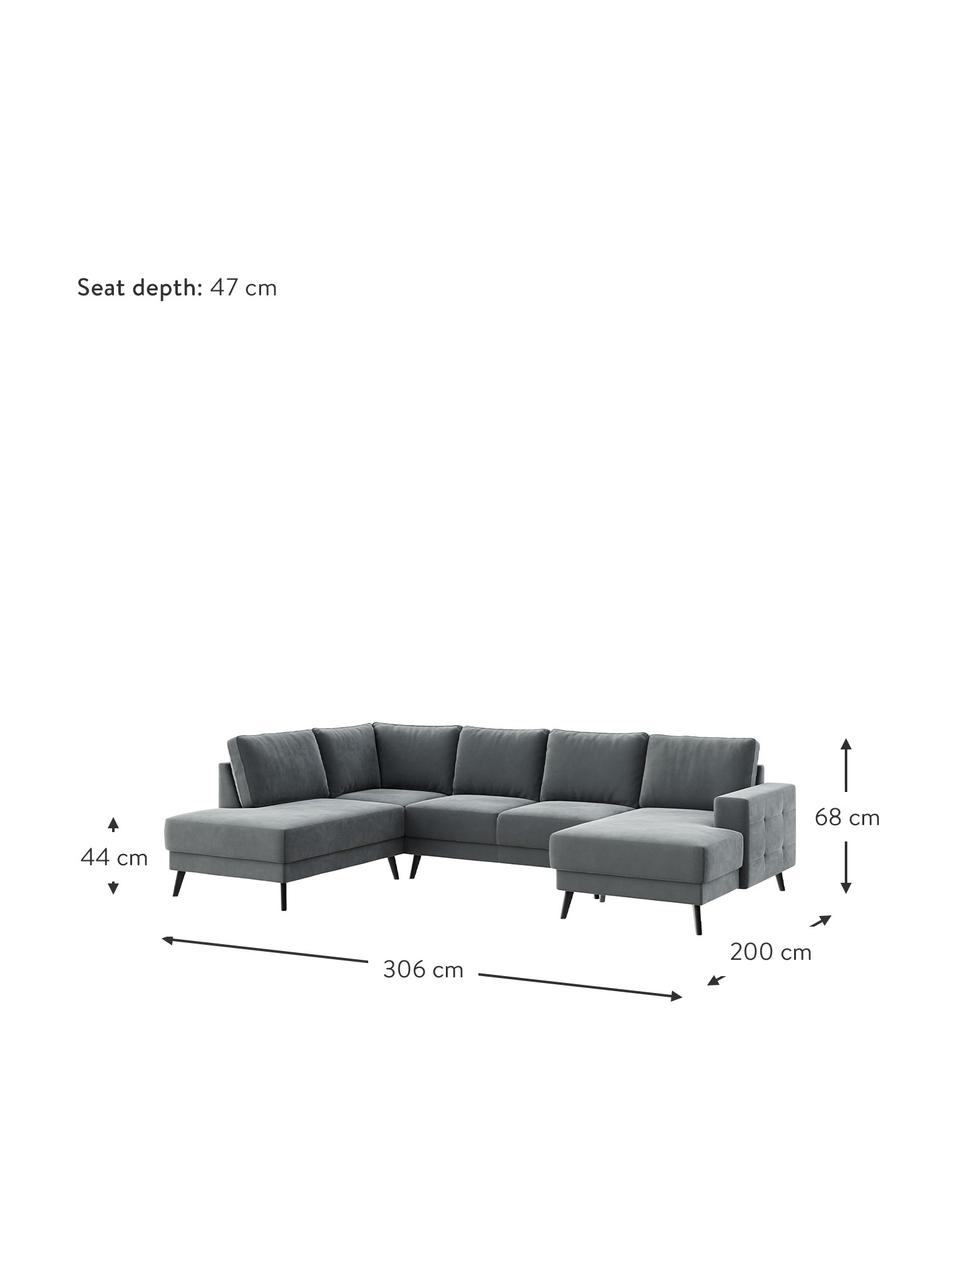 Sofa narożna XL z aksamitu Fynn (5-osobowa), Tapicerka: 100% aksamit poliestrowy , Nogi: drewno lakierowane, Aksamitny stalowy szary, S 306 x G 200 cm, lewostronna